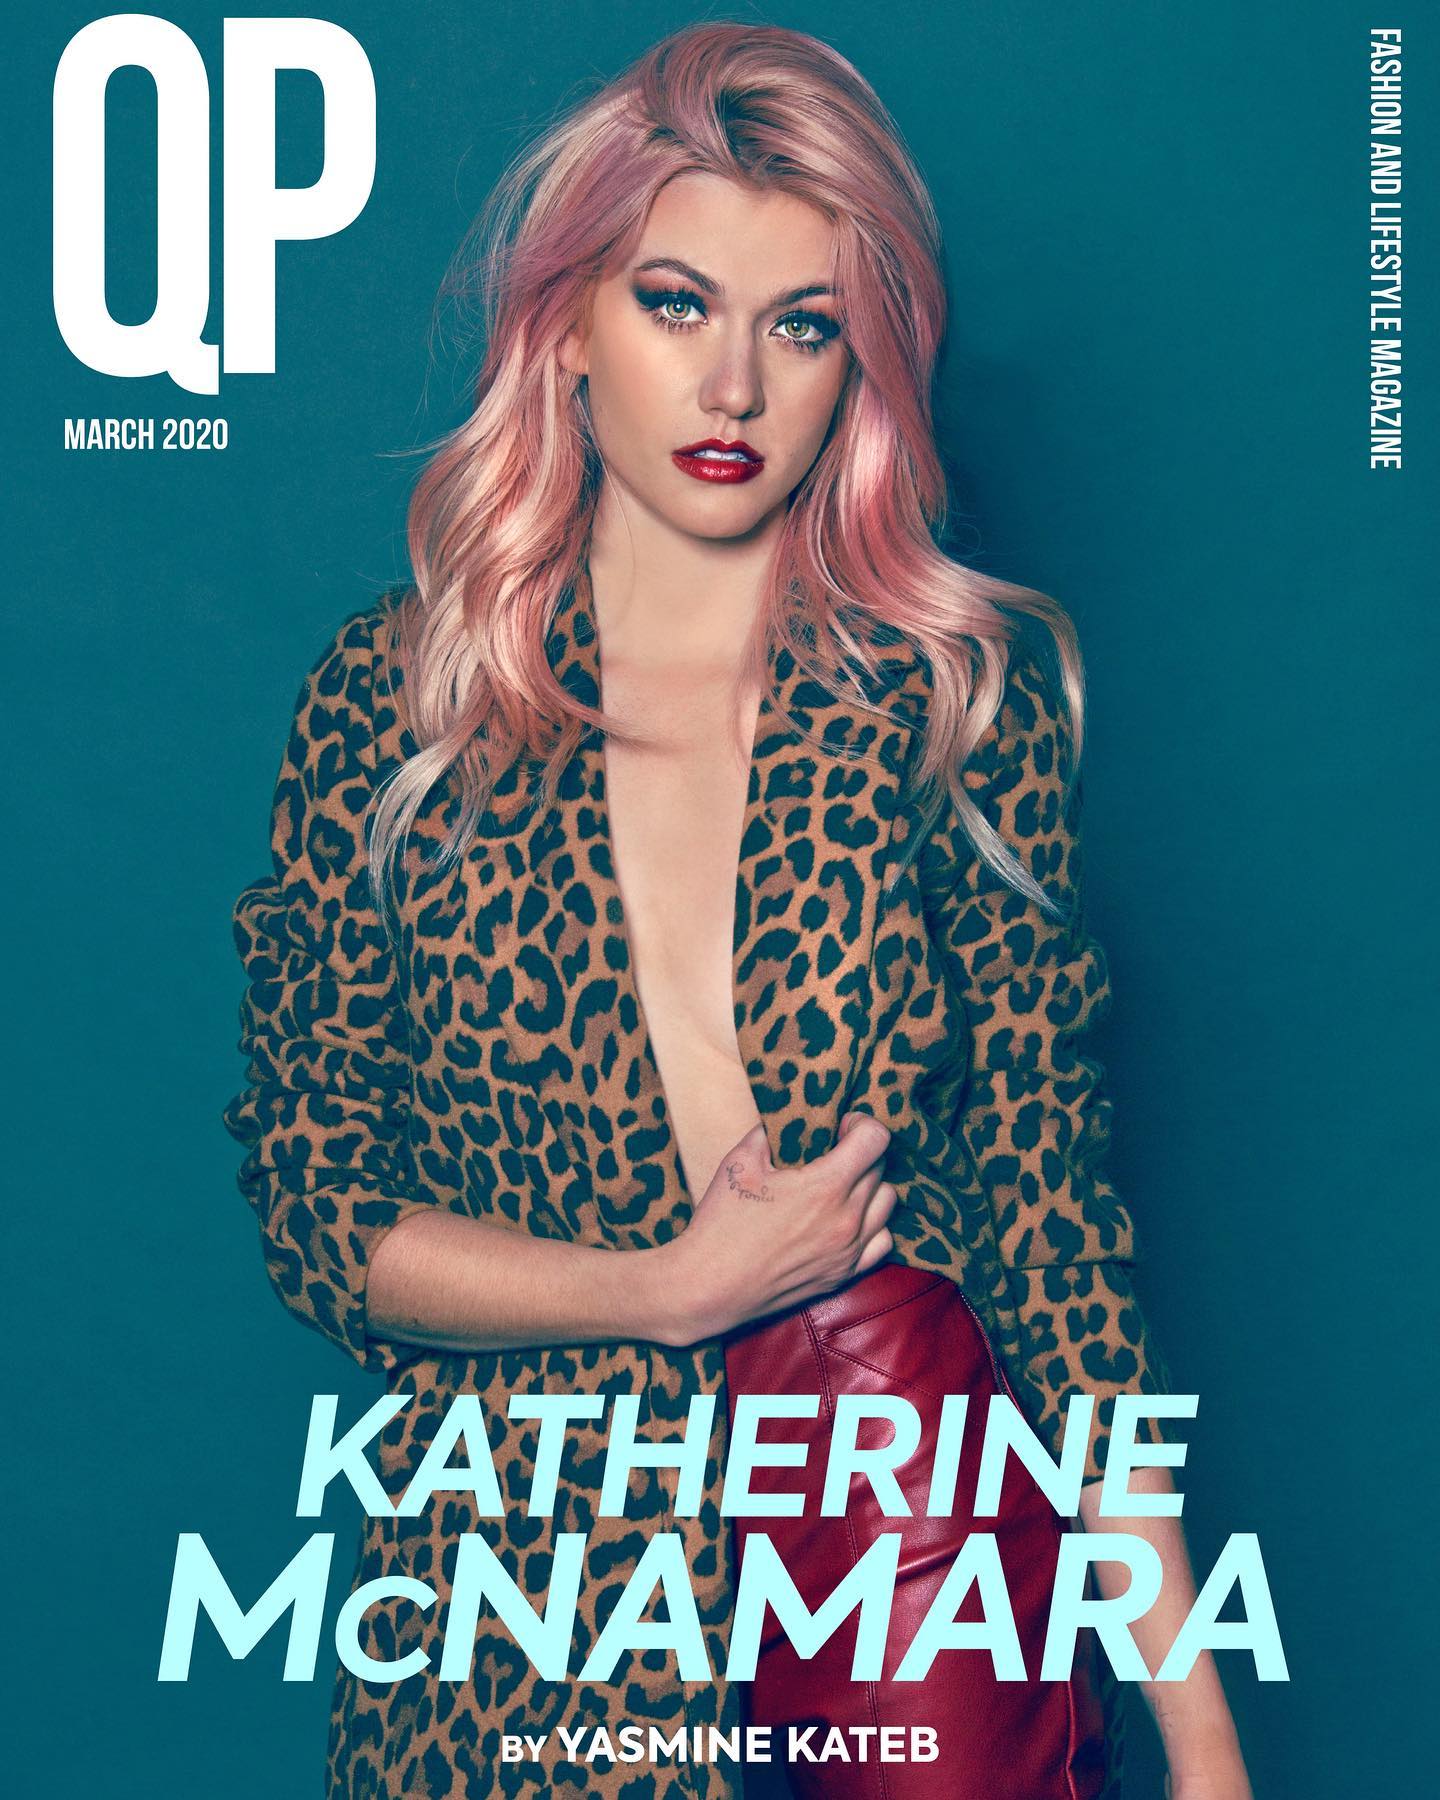 Katherine McNamara â€“ Yasmine Kateb photoshoot for QP magazine 2020